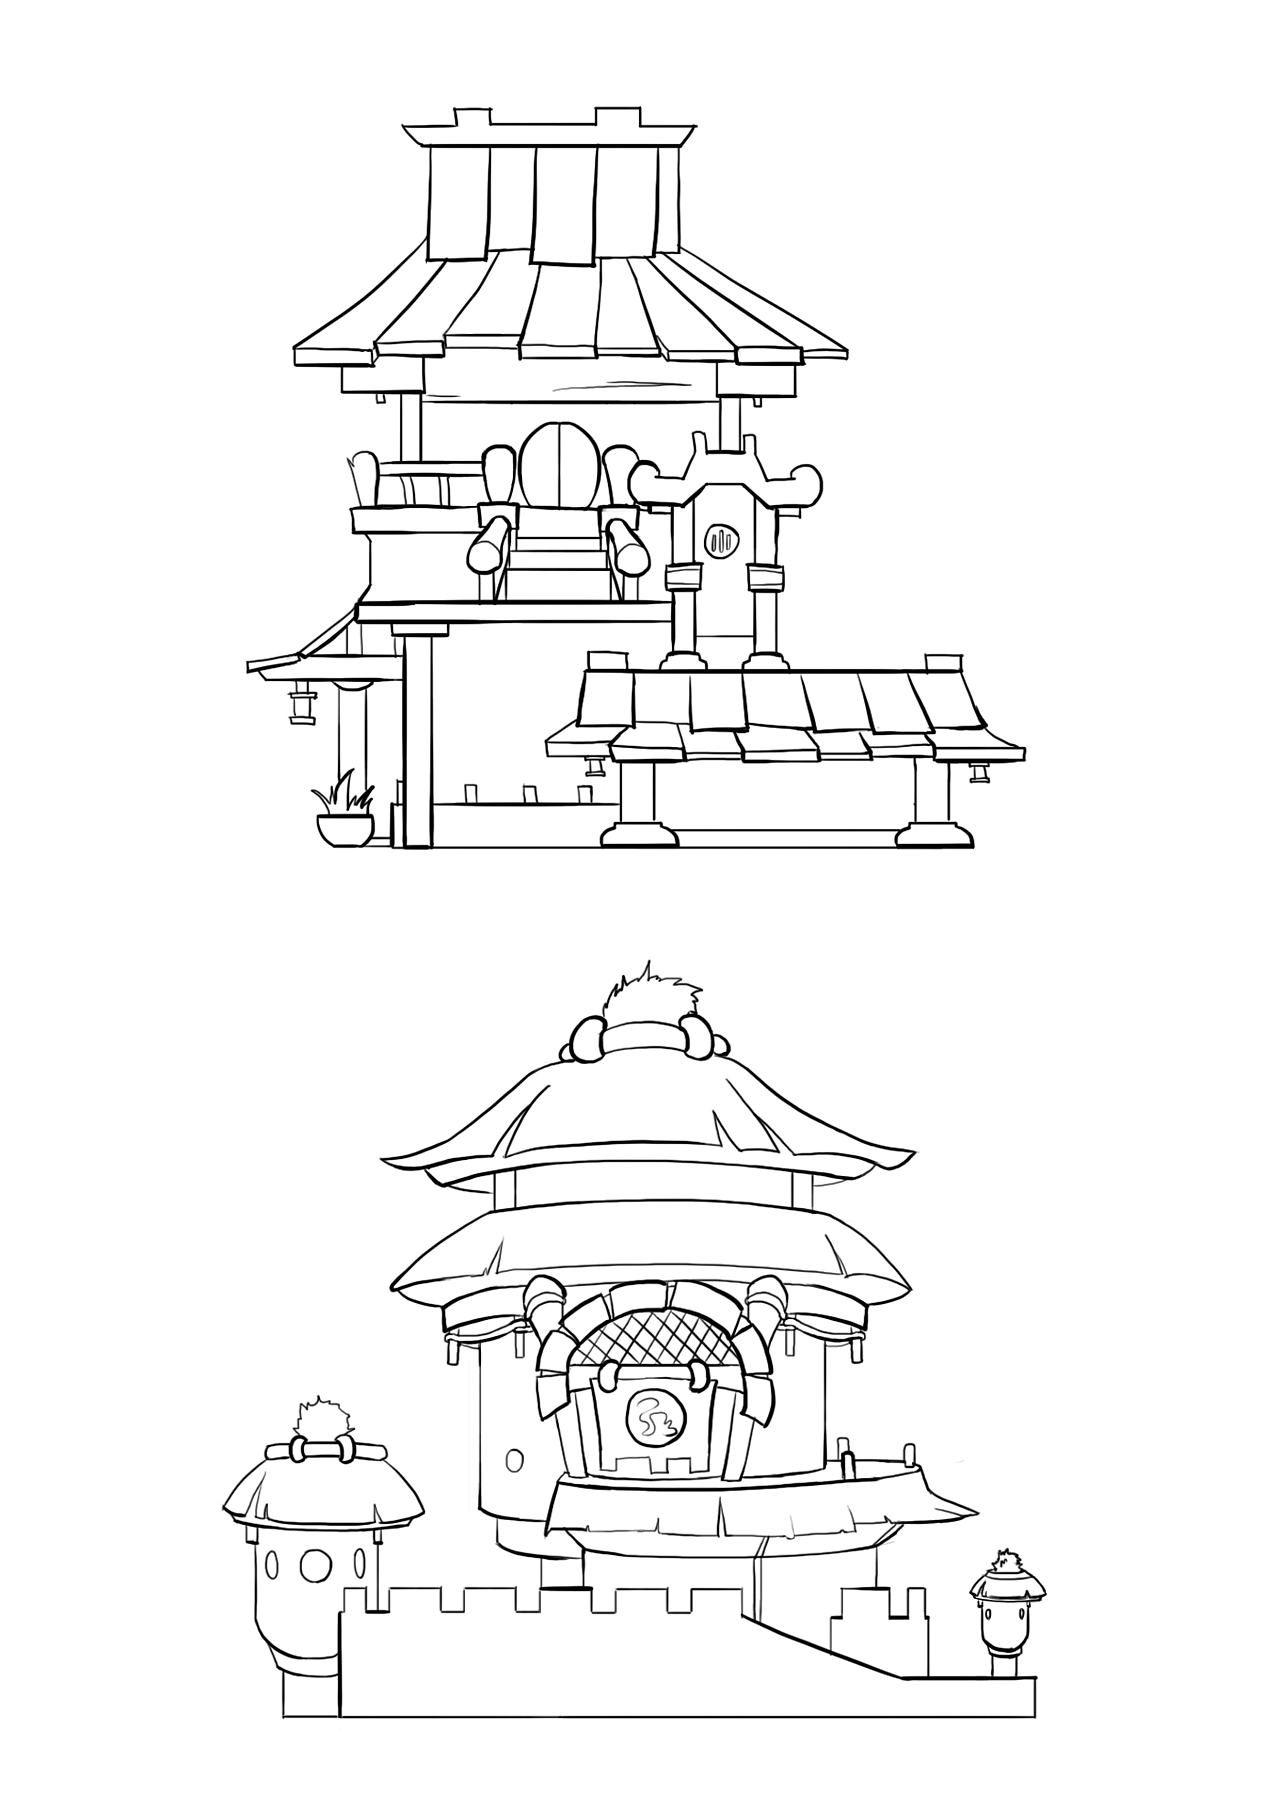 一组中国风房子设计